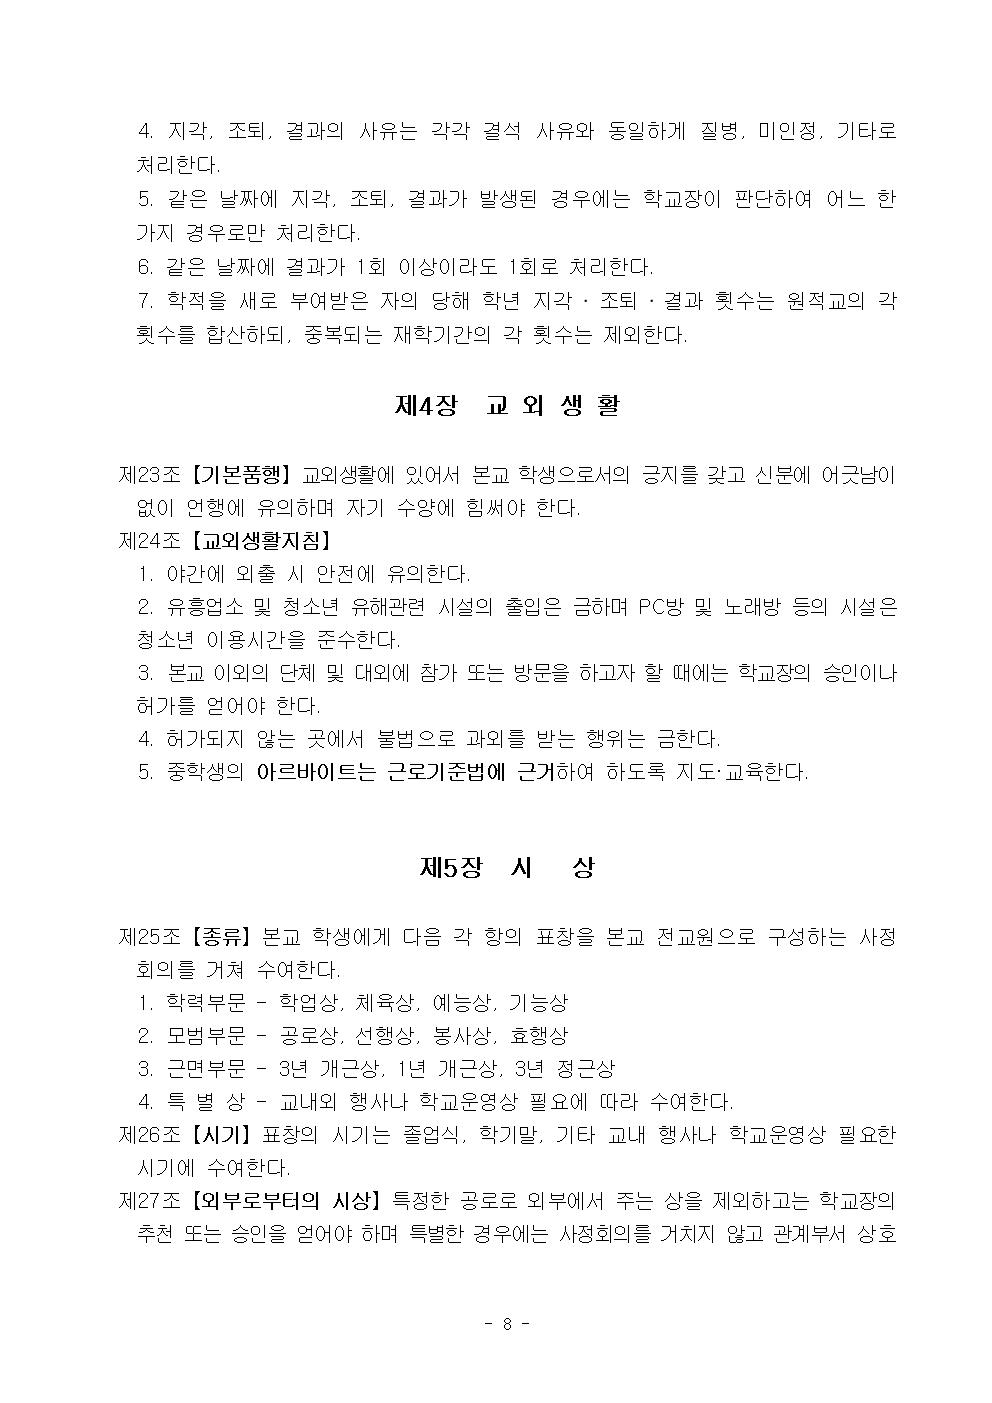 2022학년도 광혜원중학교 학생생활규정009